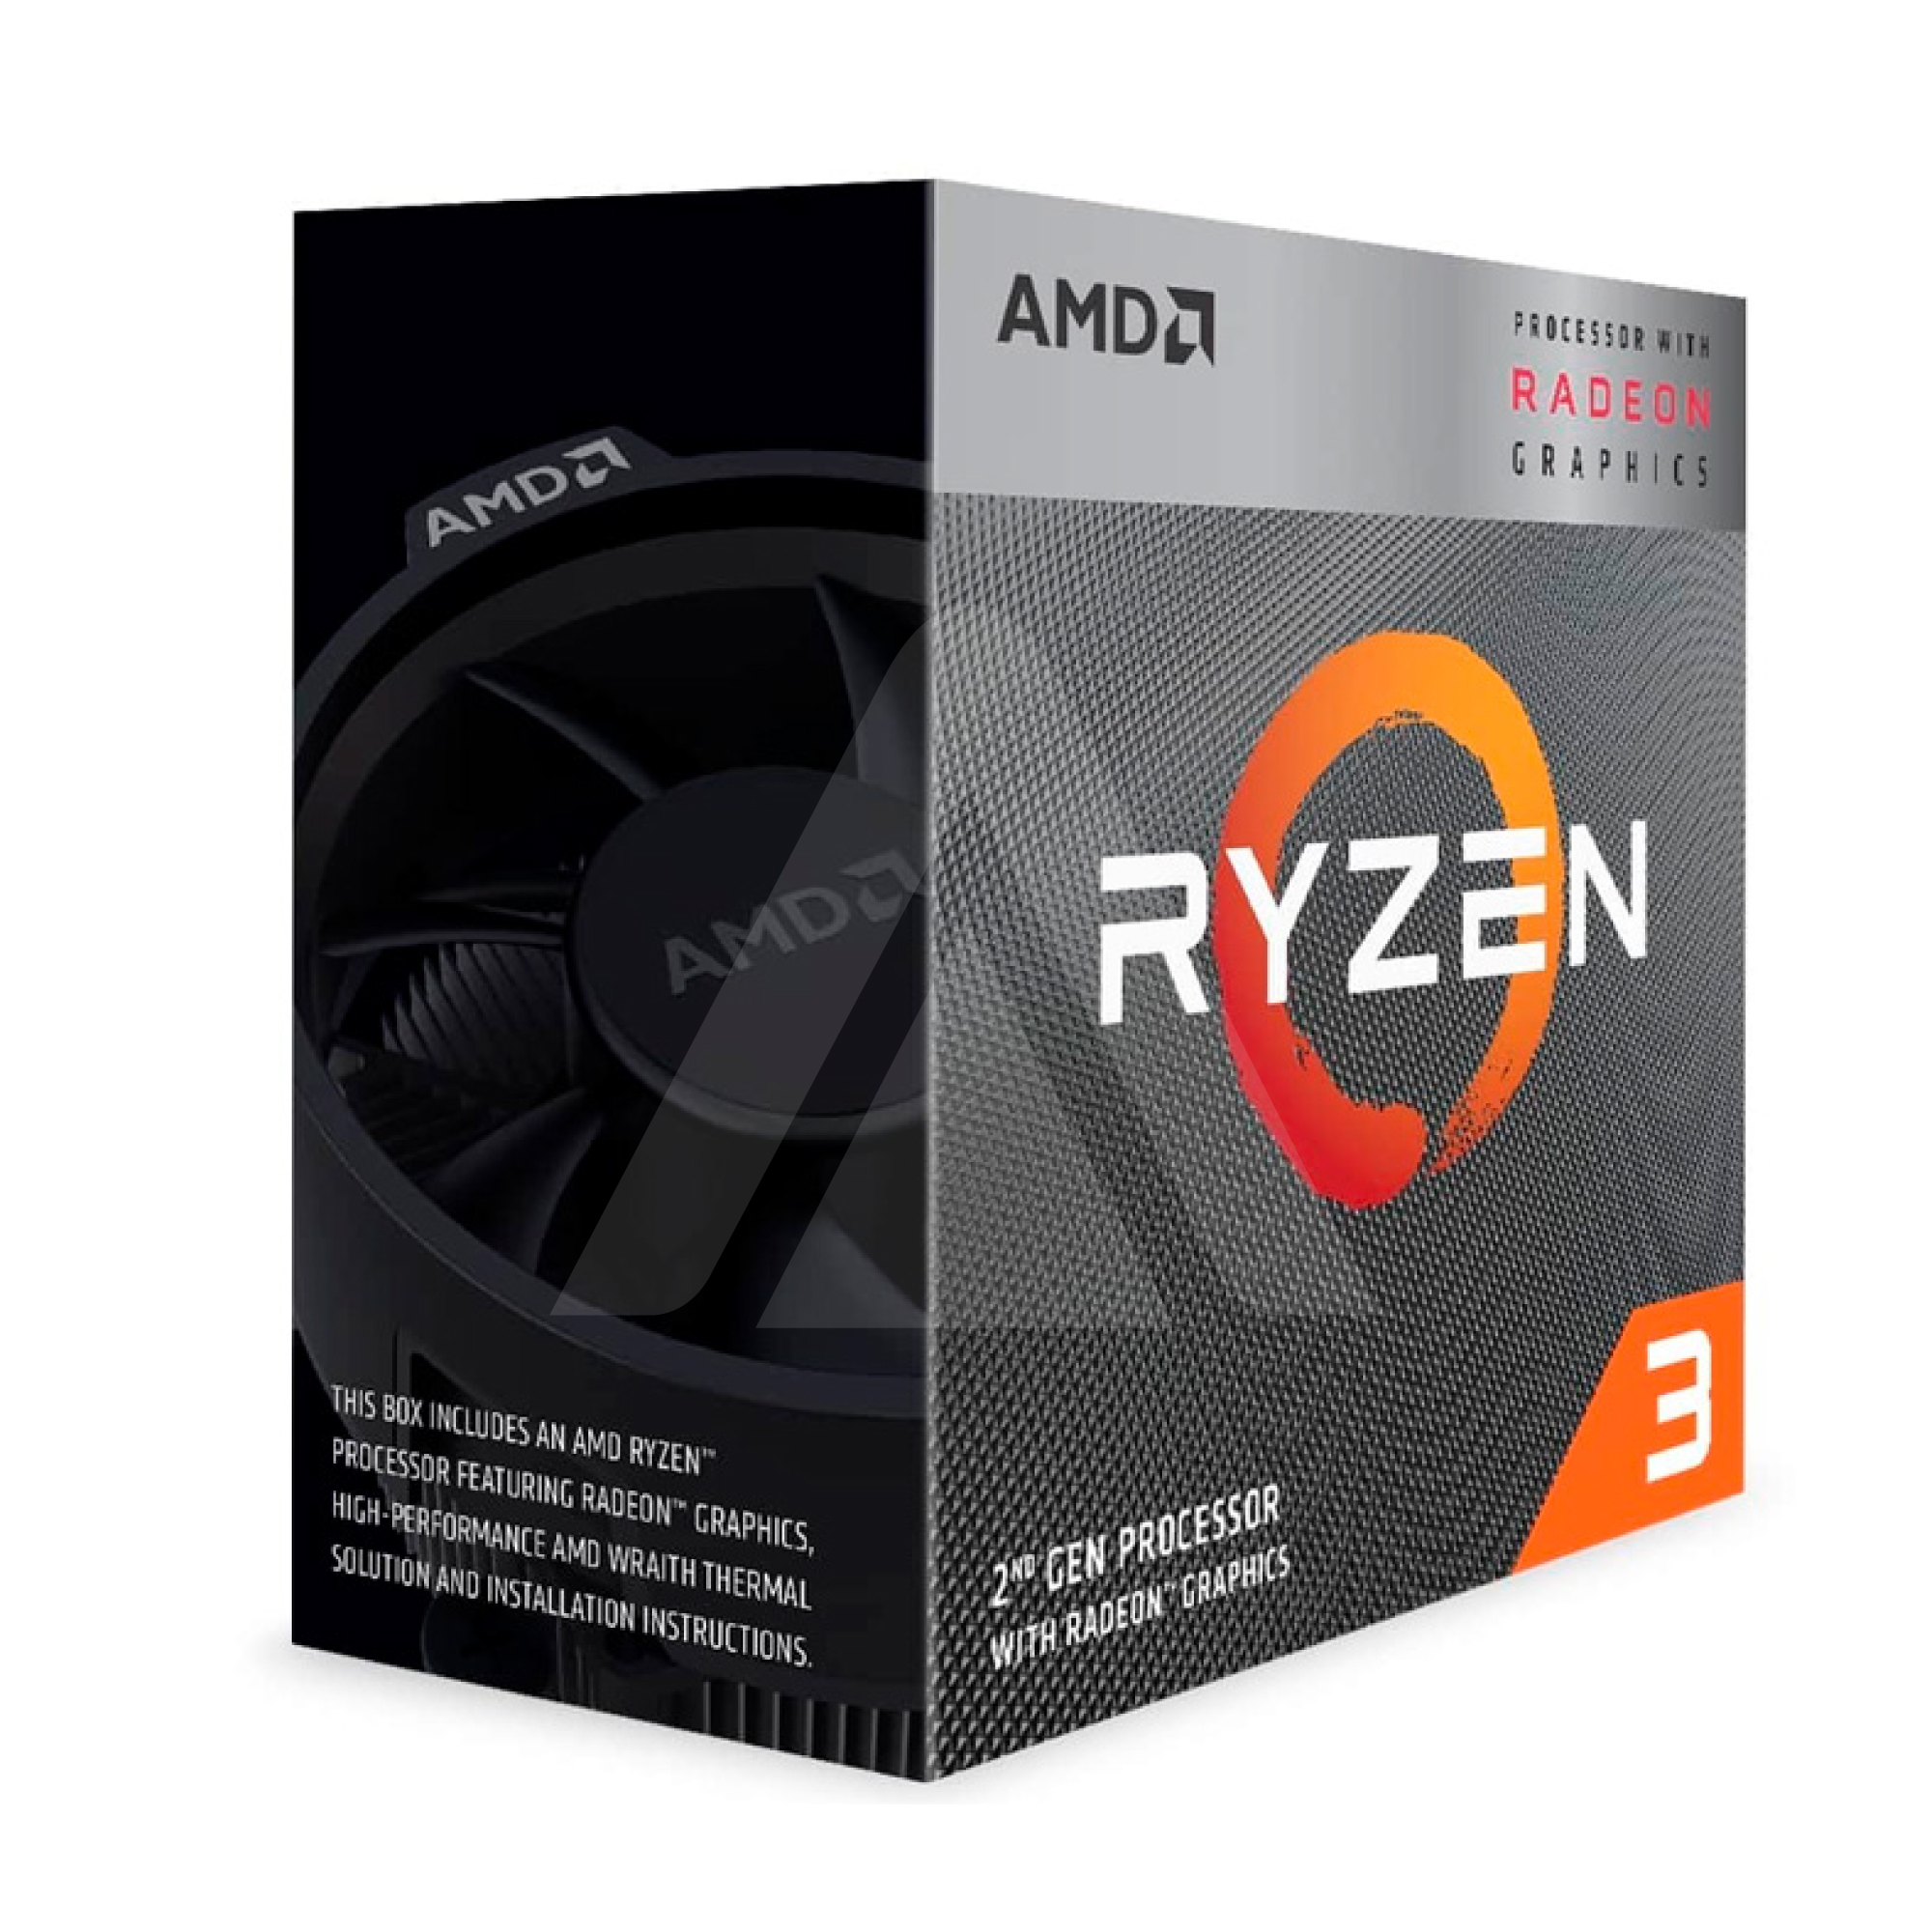 PROC AMD RYZEN 3 3200G 3.60GHZ